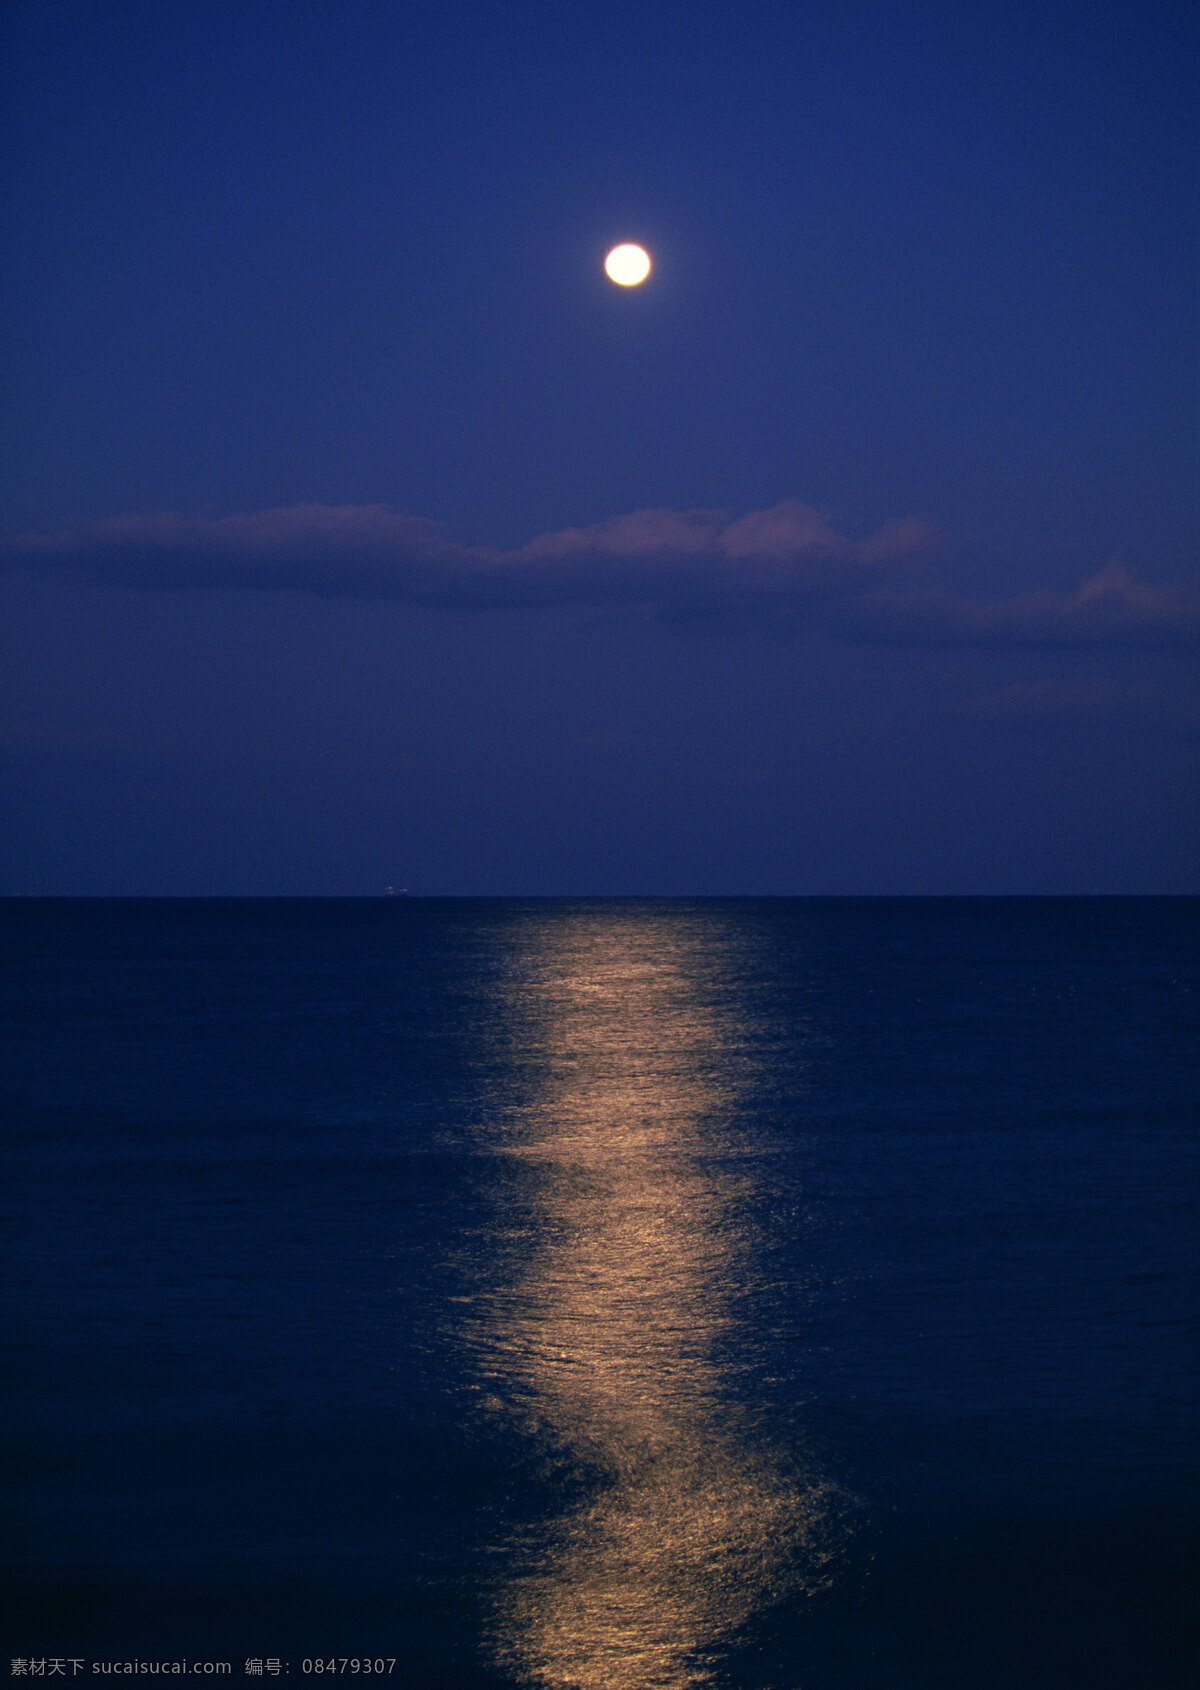 海上明月 月夜 月亮 大海 海景 自然景观 自然风景